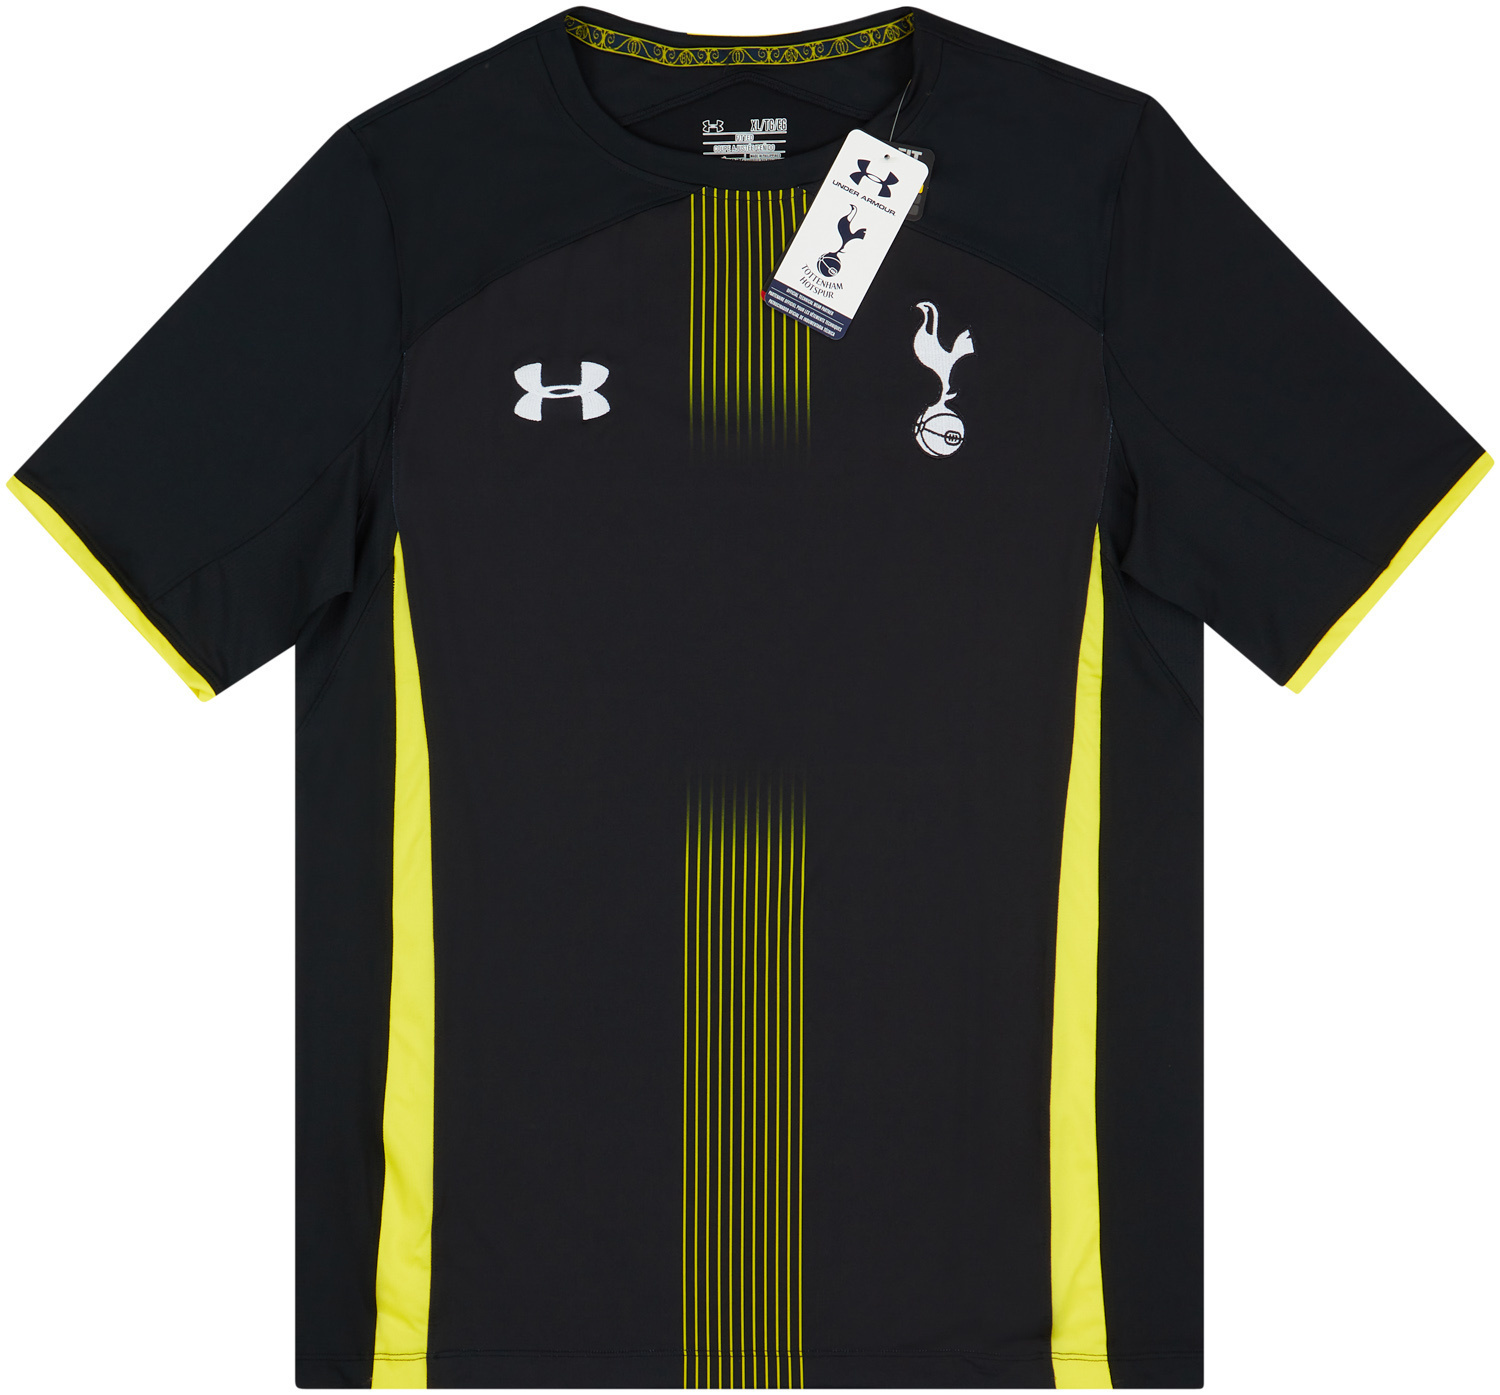 2014-15 Tottenham Hotspur Player Issue Away Shirt